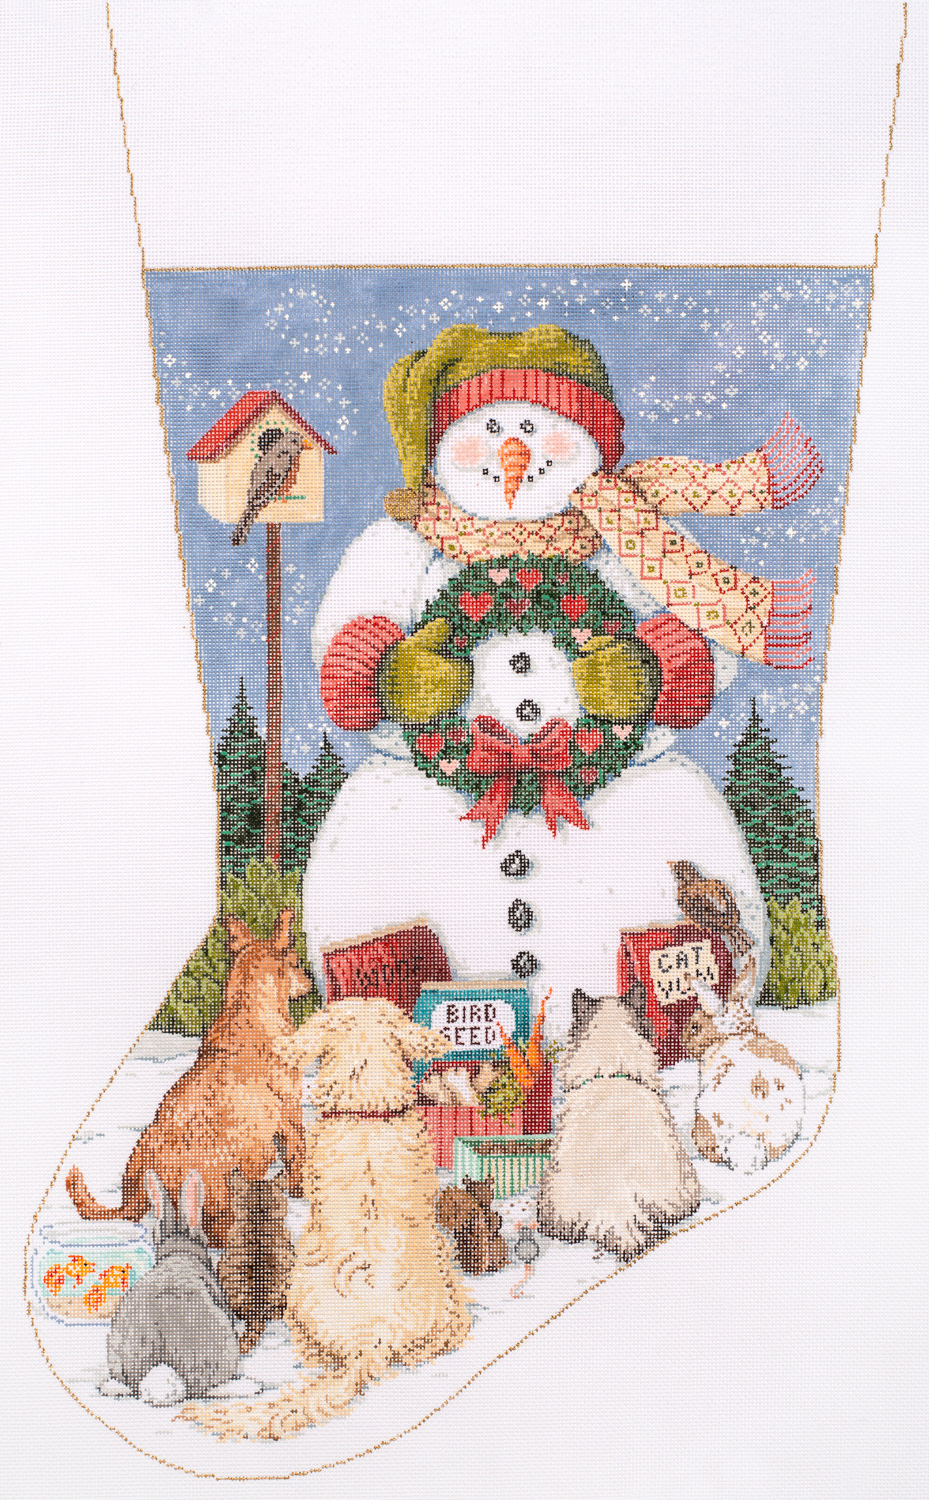 Christmas Stocking Needlepoint Kit Snowman